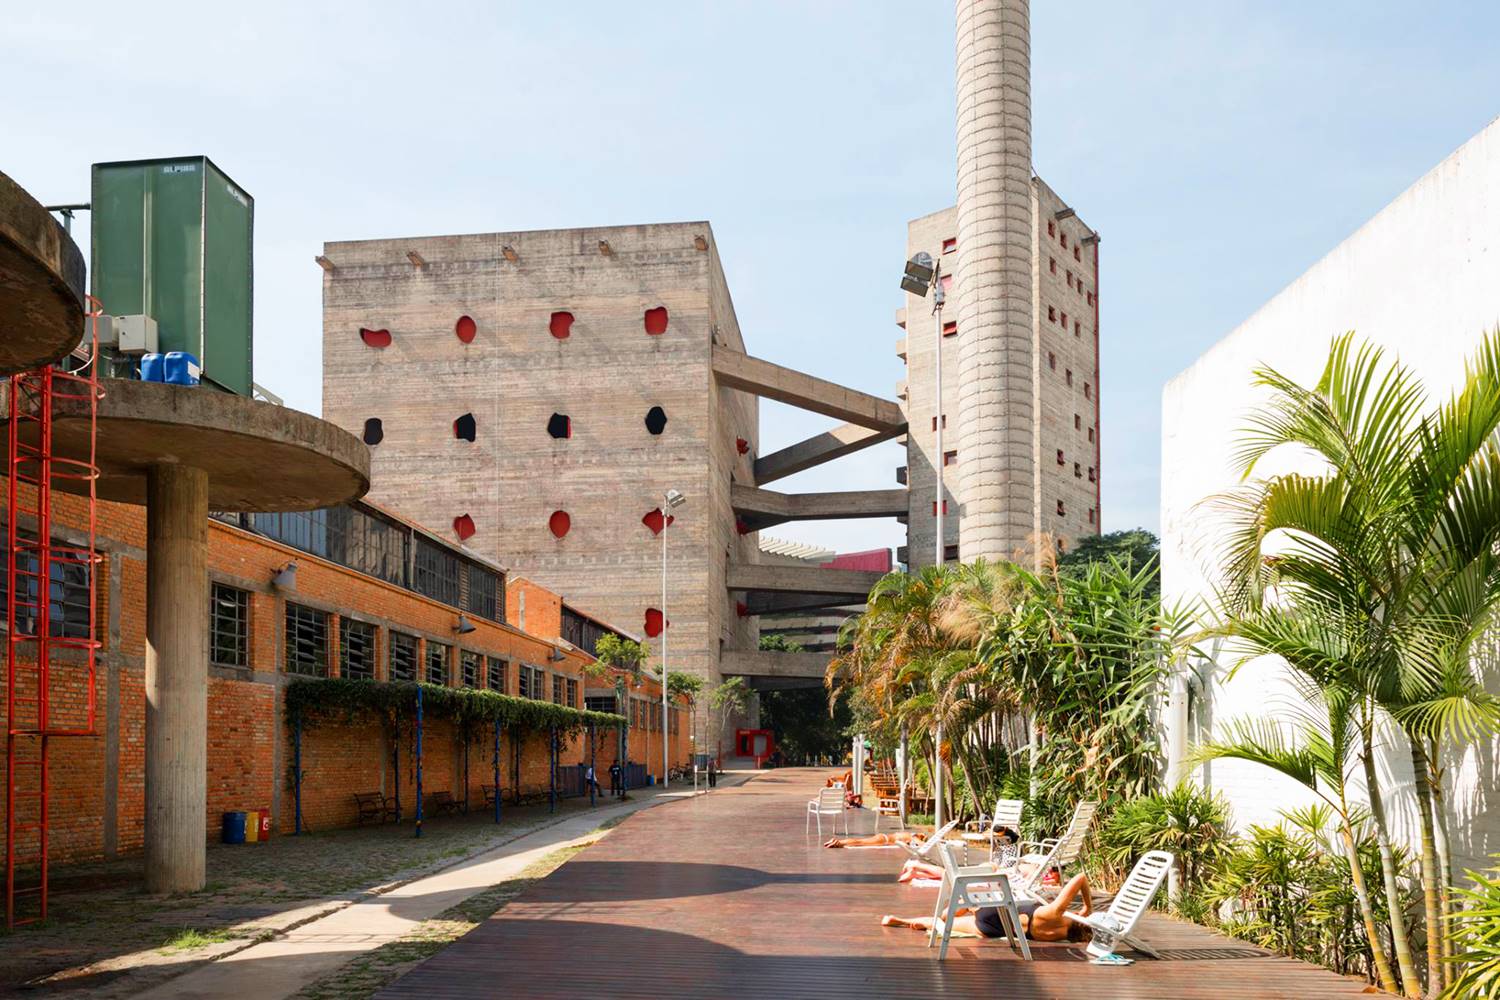 SESC Pompéia. Centro cultural y deportivo diseñado por Lina Bo Bardi en São Paulo.